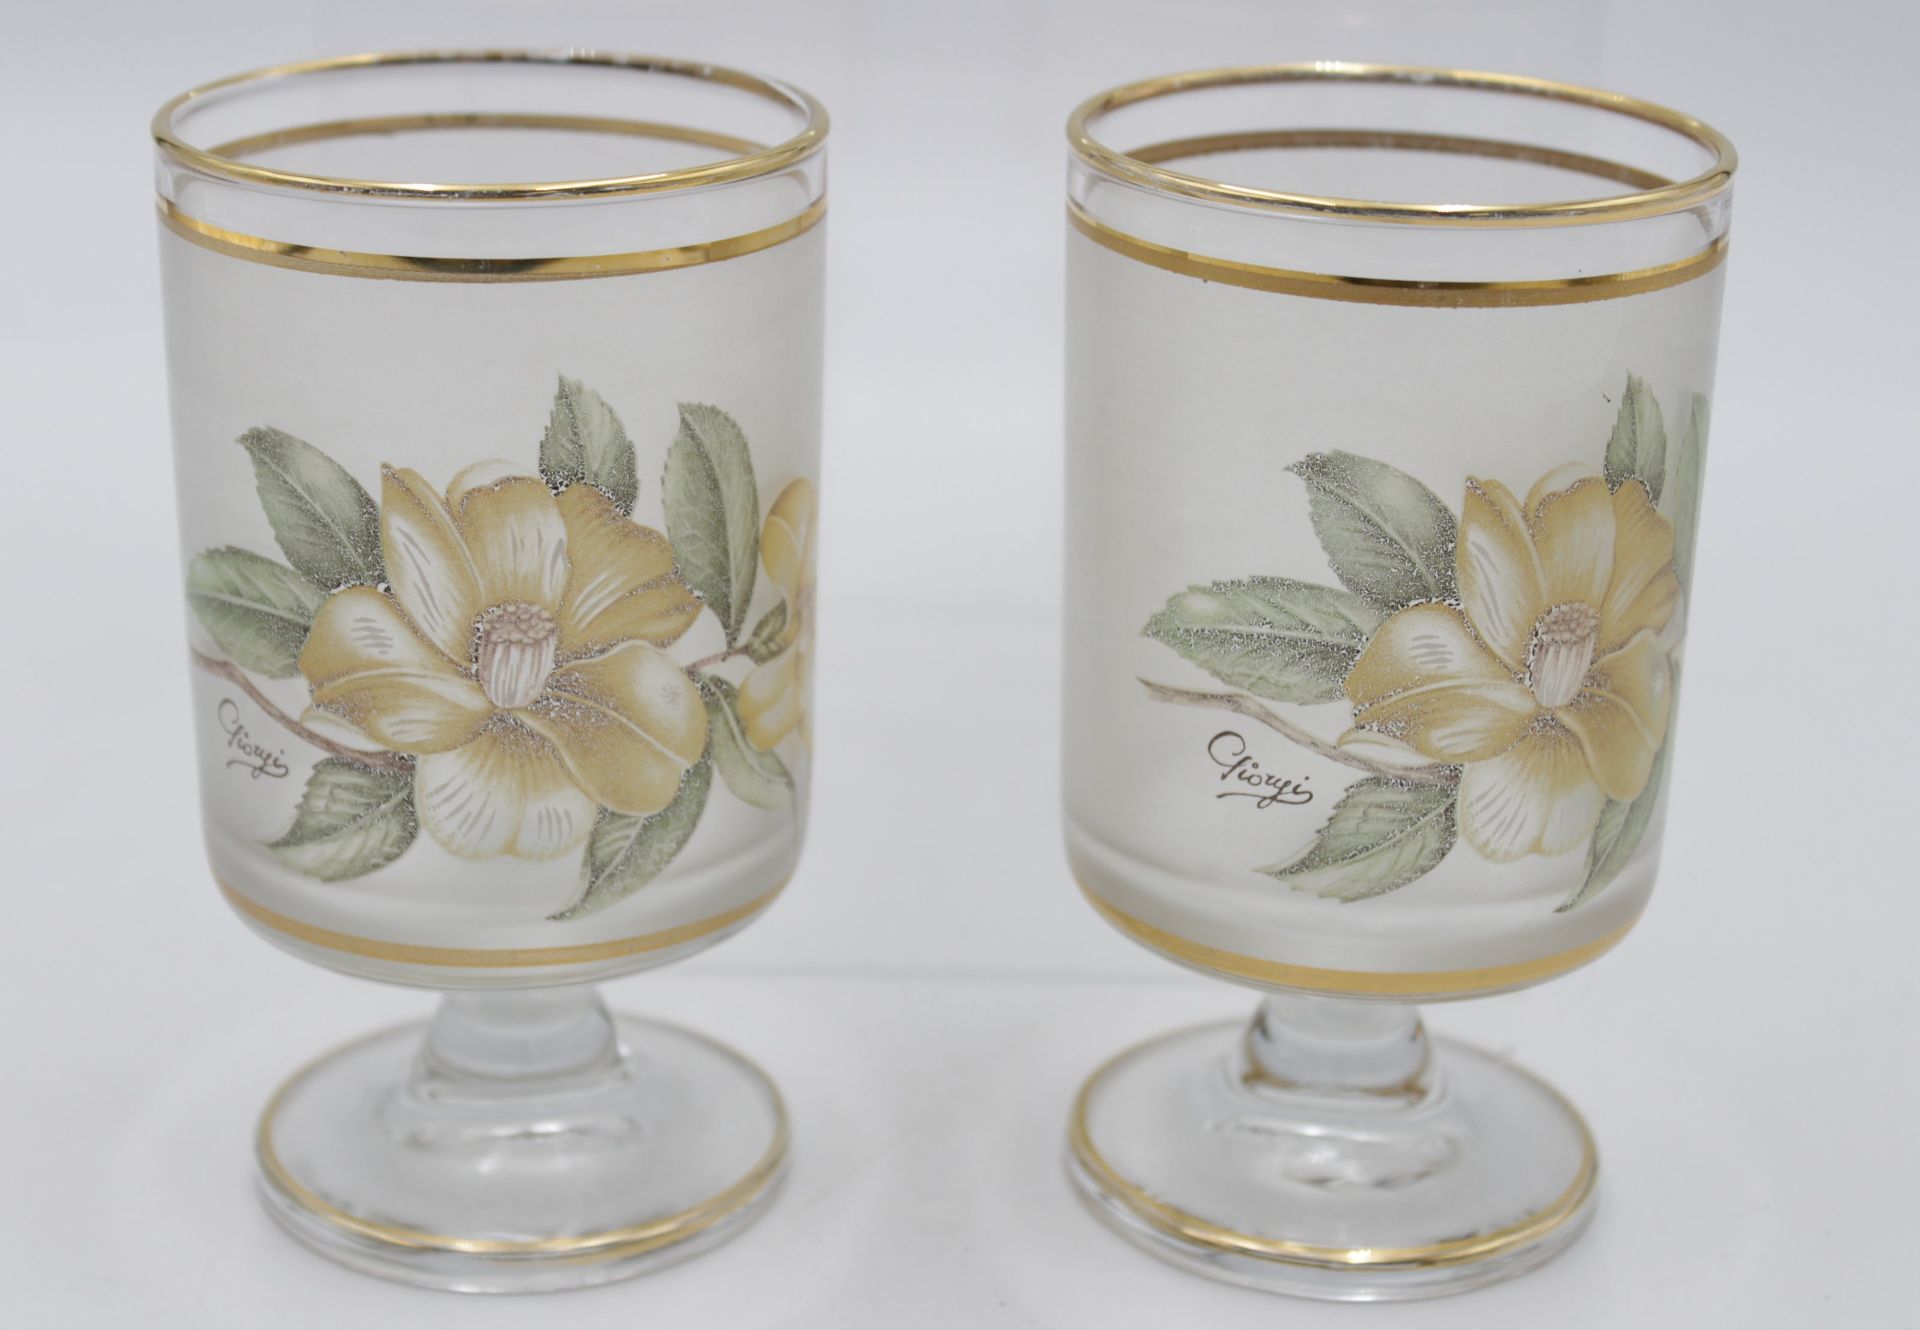 Wasserkrug mit 2 Gläsern, florales Dekor, signiert, Krug H-22cm Gläser H-12,2cm. - Image 3 of 4